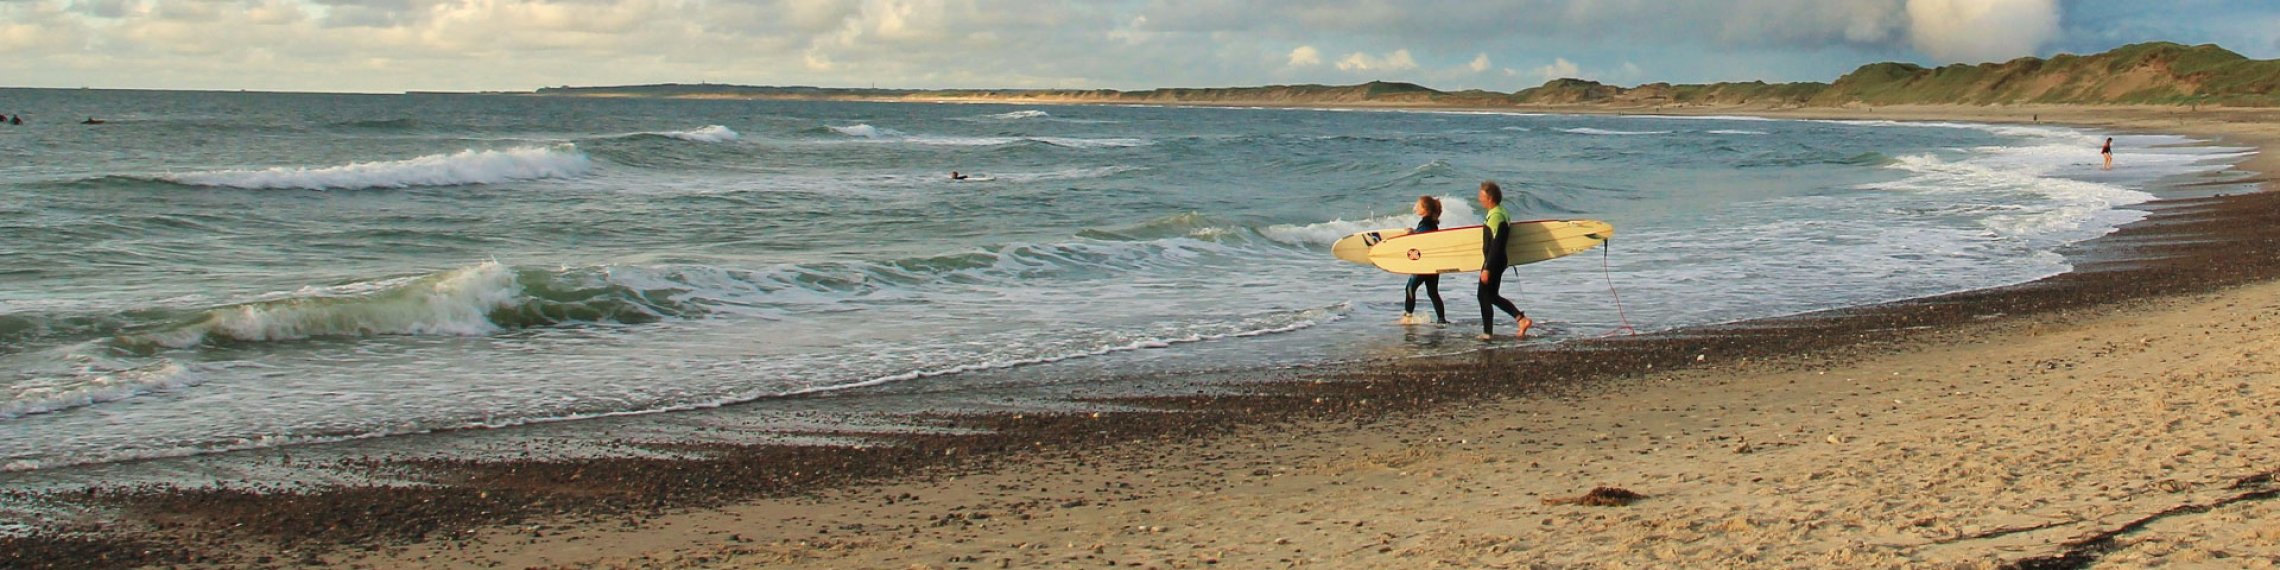 Surfen in Dänemark